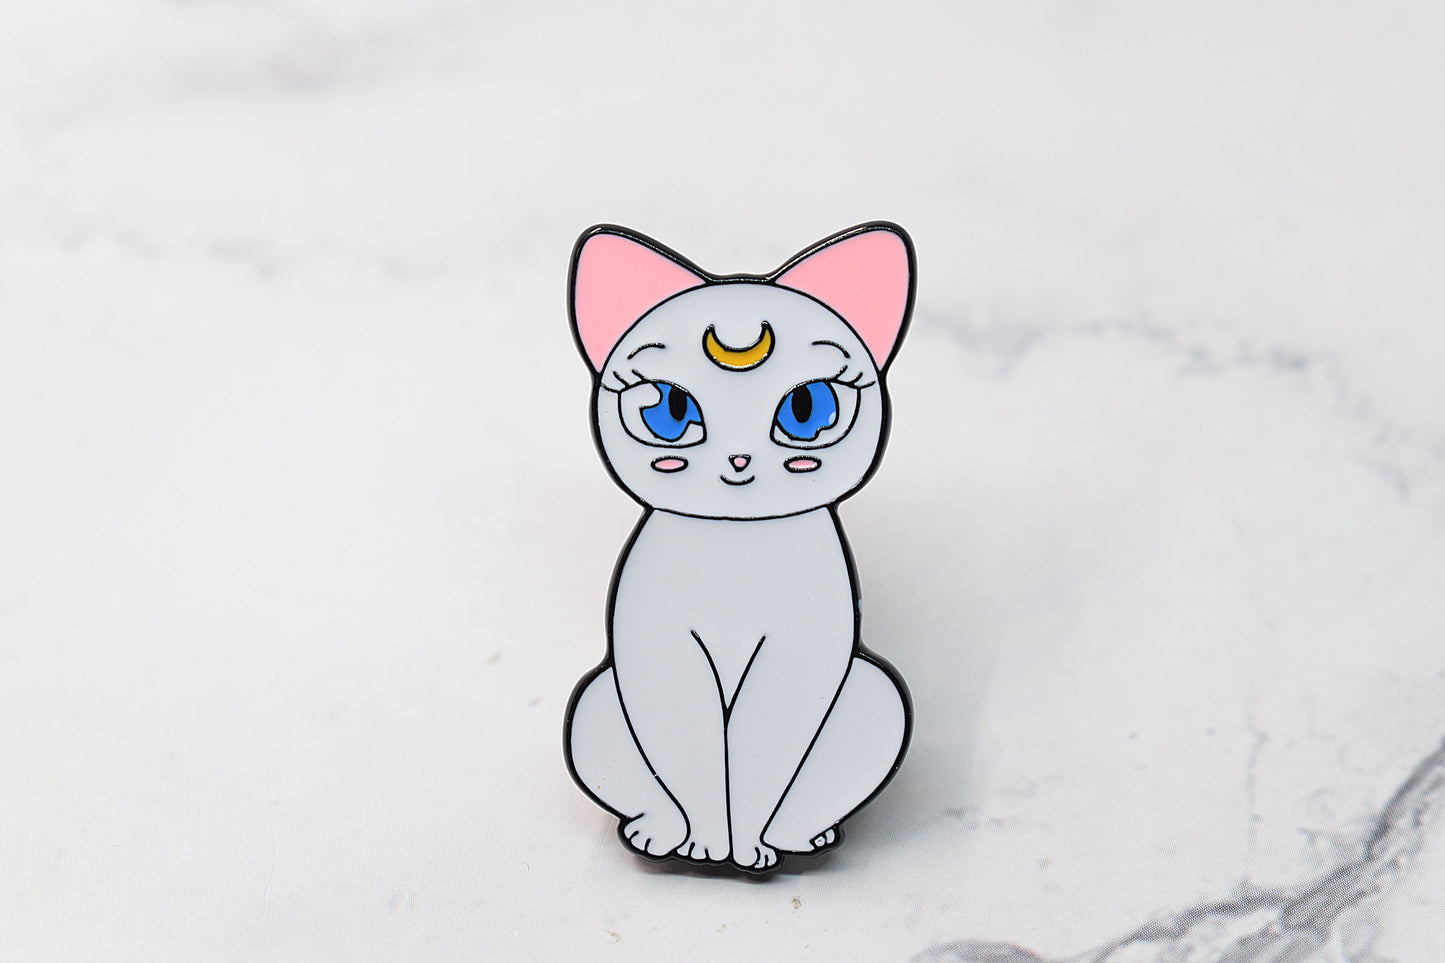 Épingle en émail Sailor Moon Cat Artemis, épingle en émail anime, manga